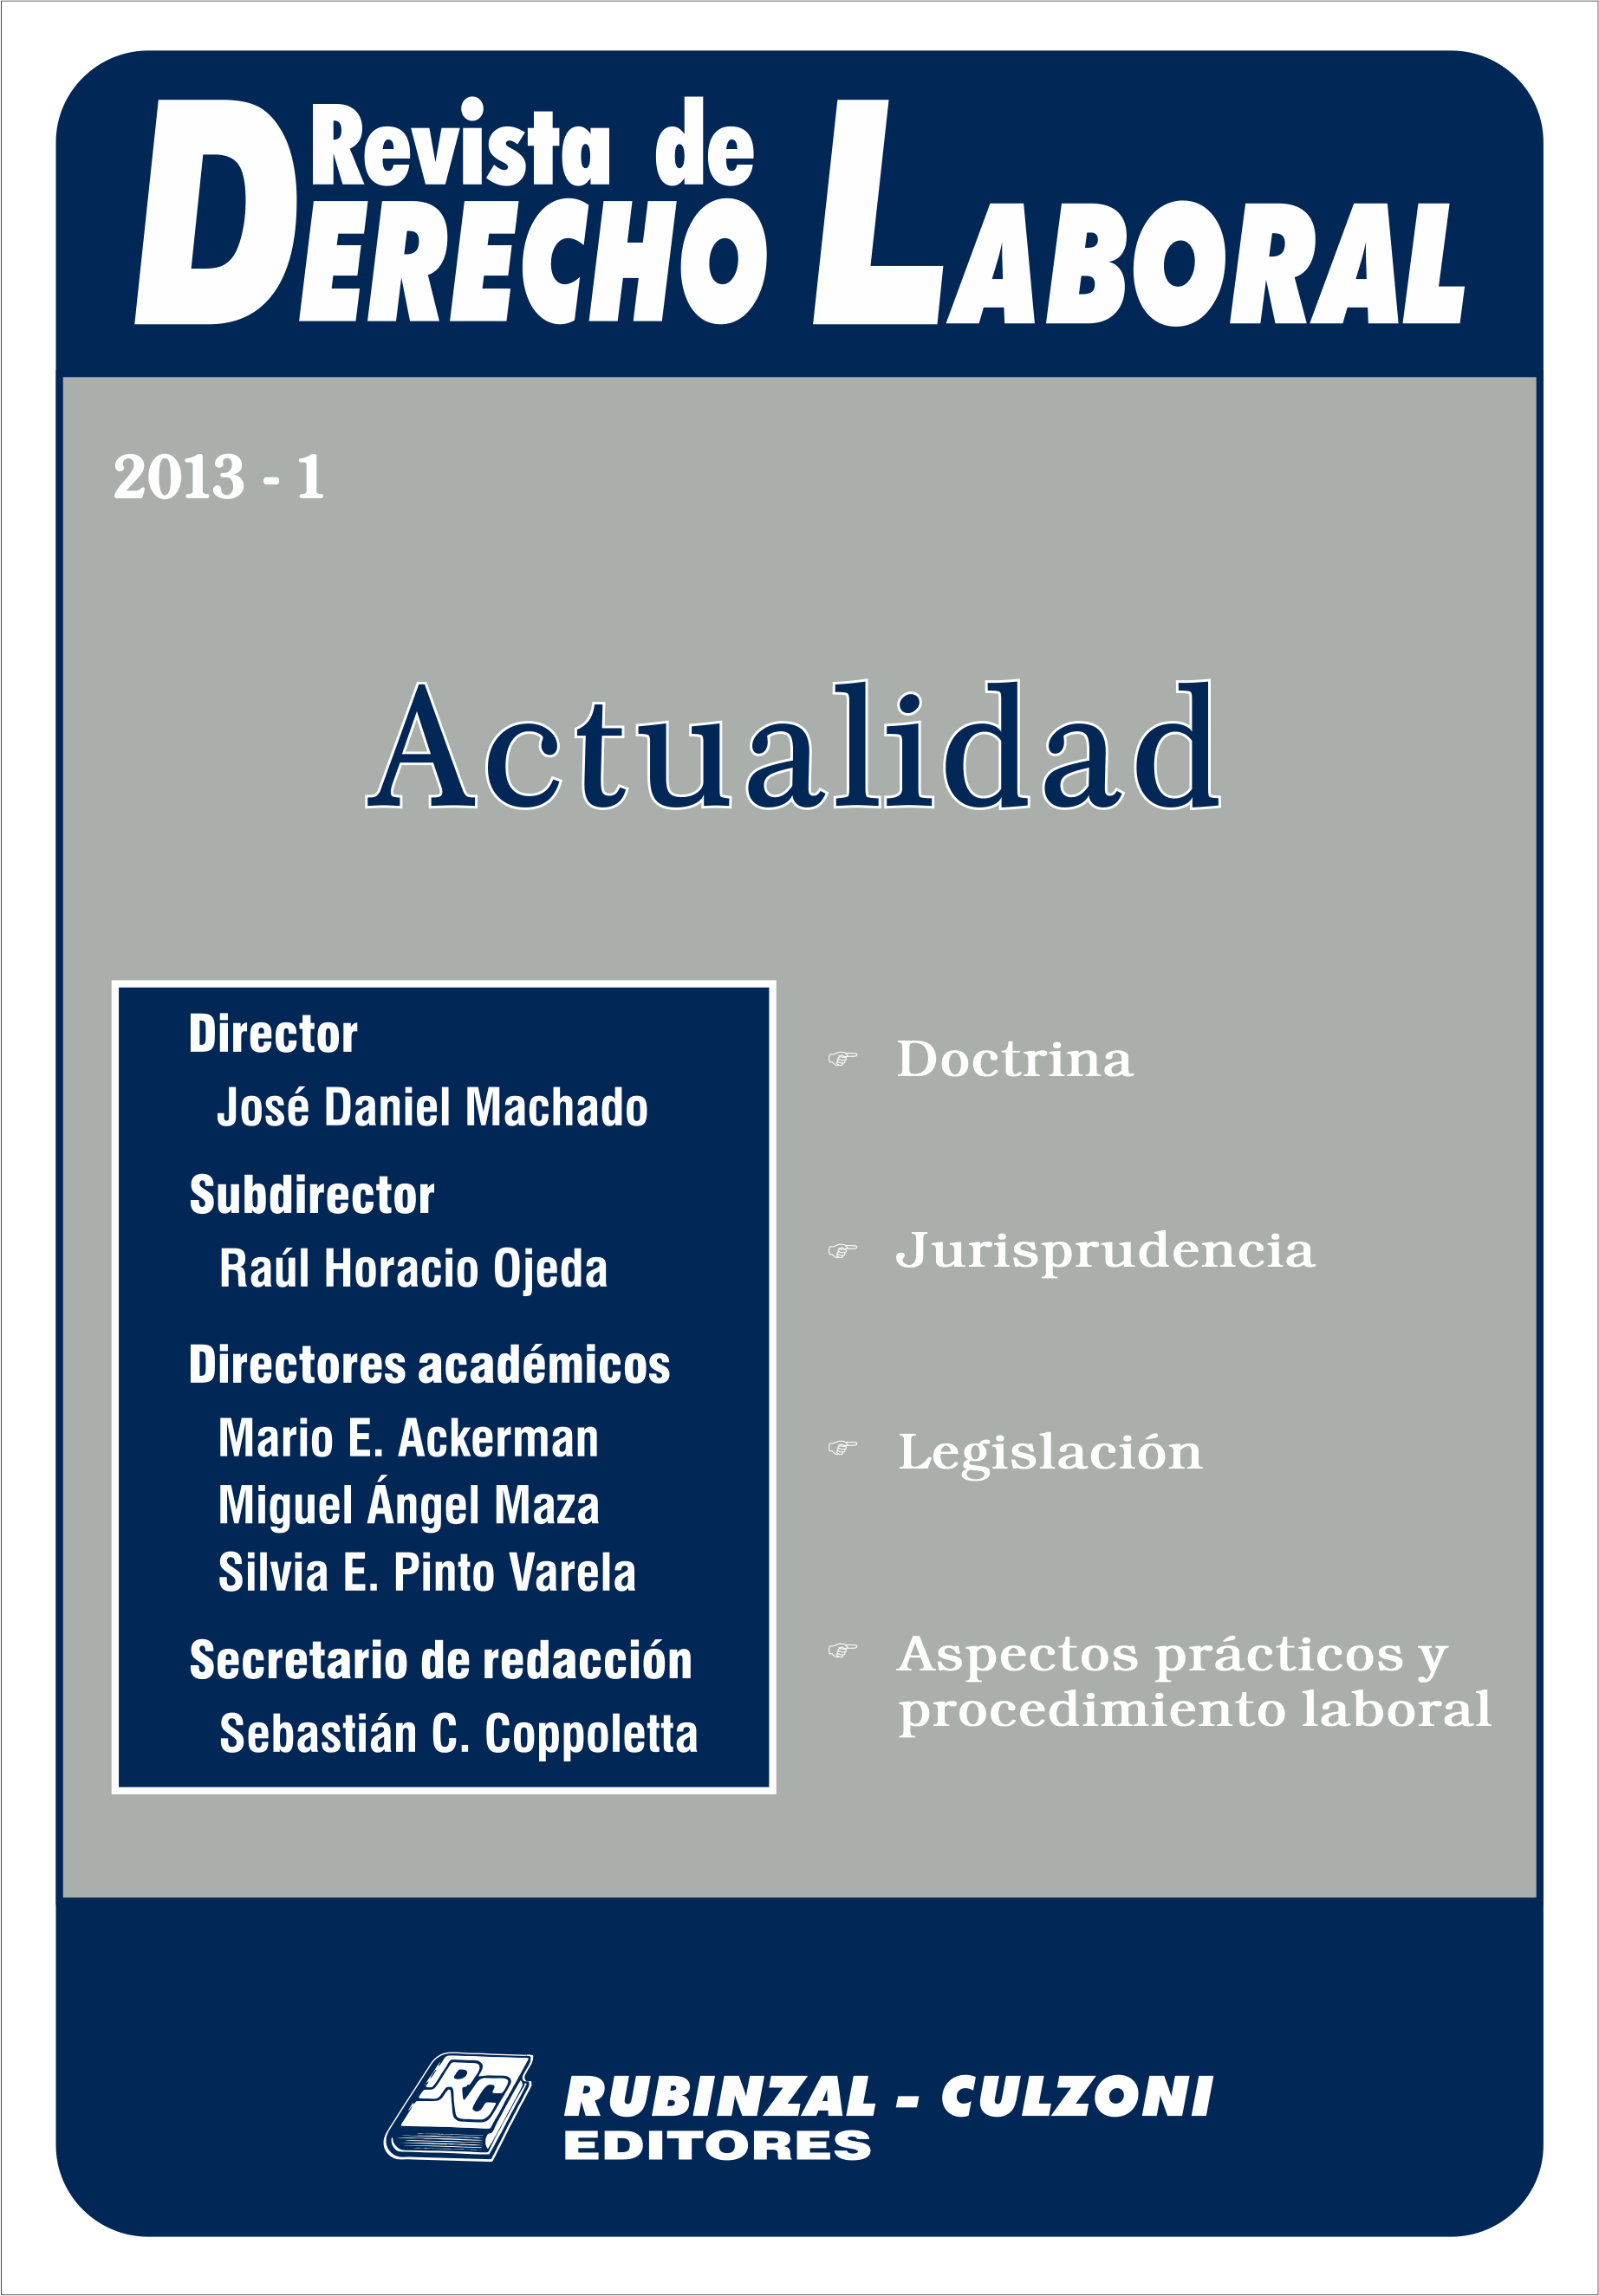 Revista de Derecho Laboral Actualidad - Año 2013 - 1